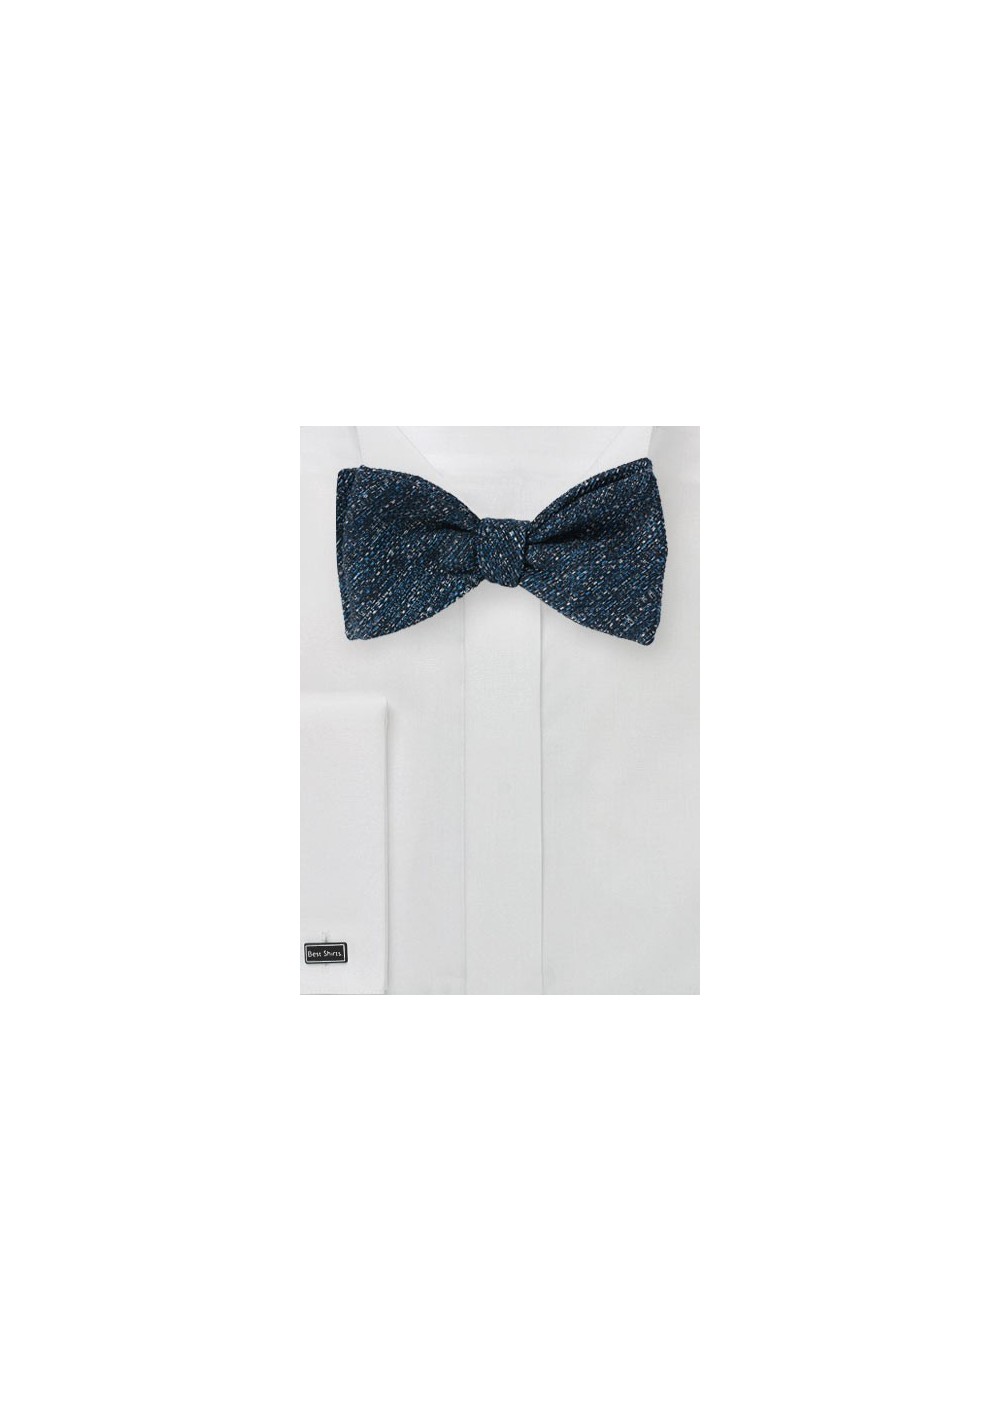 Textured Weave Bow Tie in Dark Blue